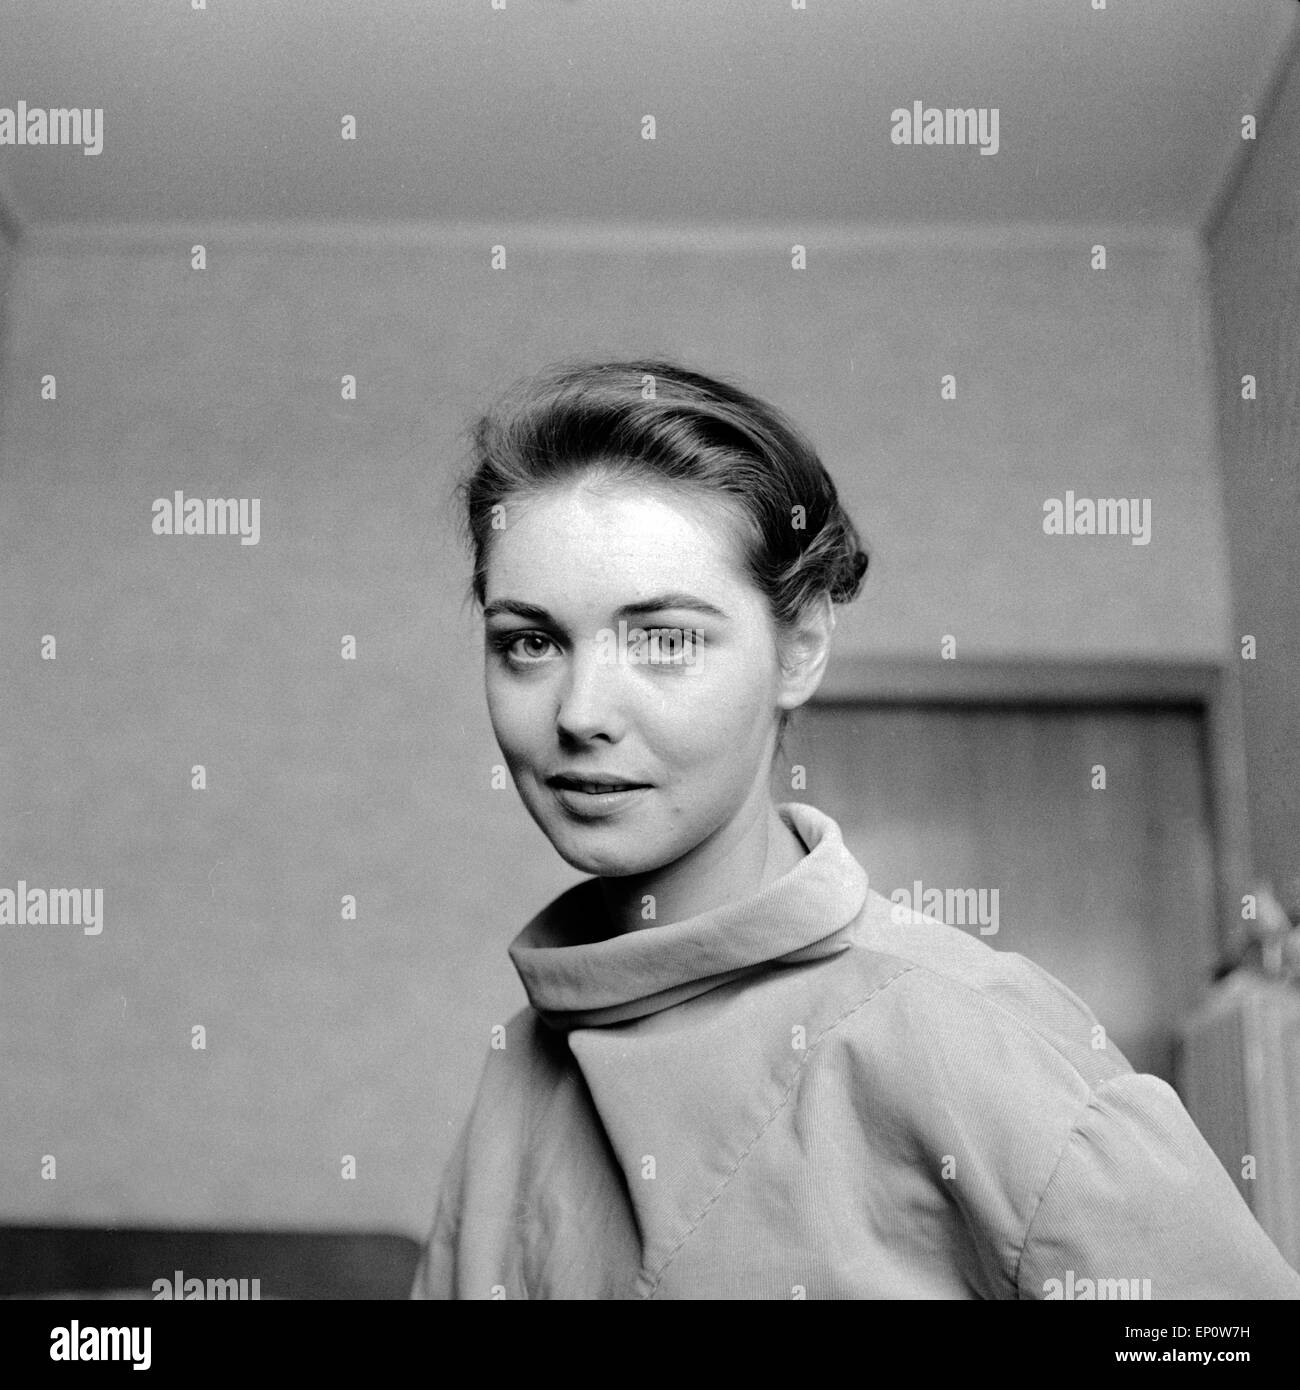 Deutsche Schauspielerin Ingeborg Schöner, Deutschland 1957. German actress Ingeborg Schöner, Germany 1957. Stock Photo